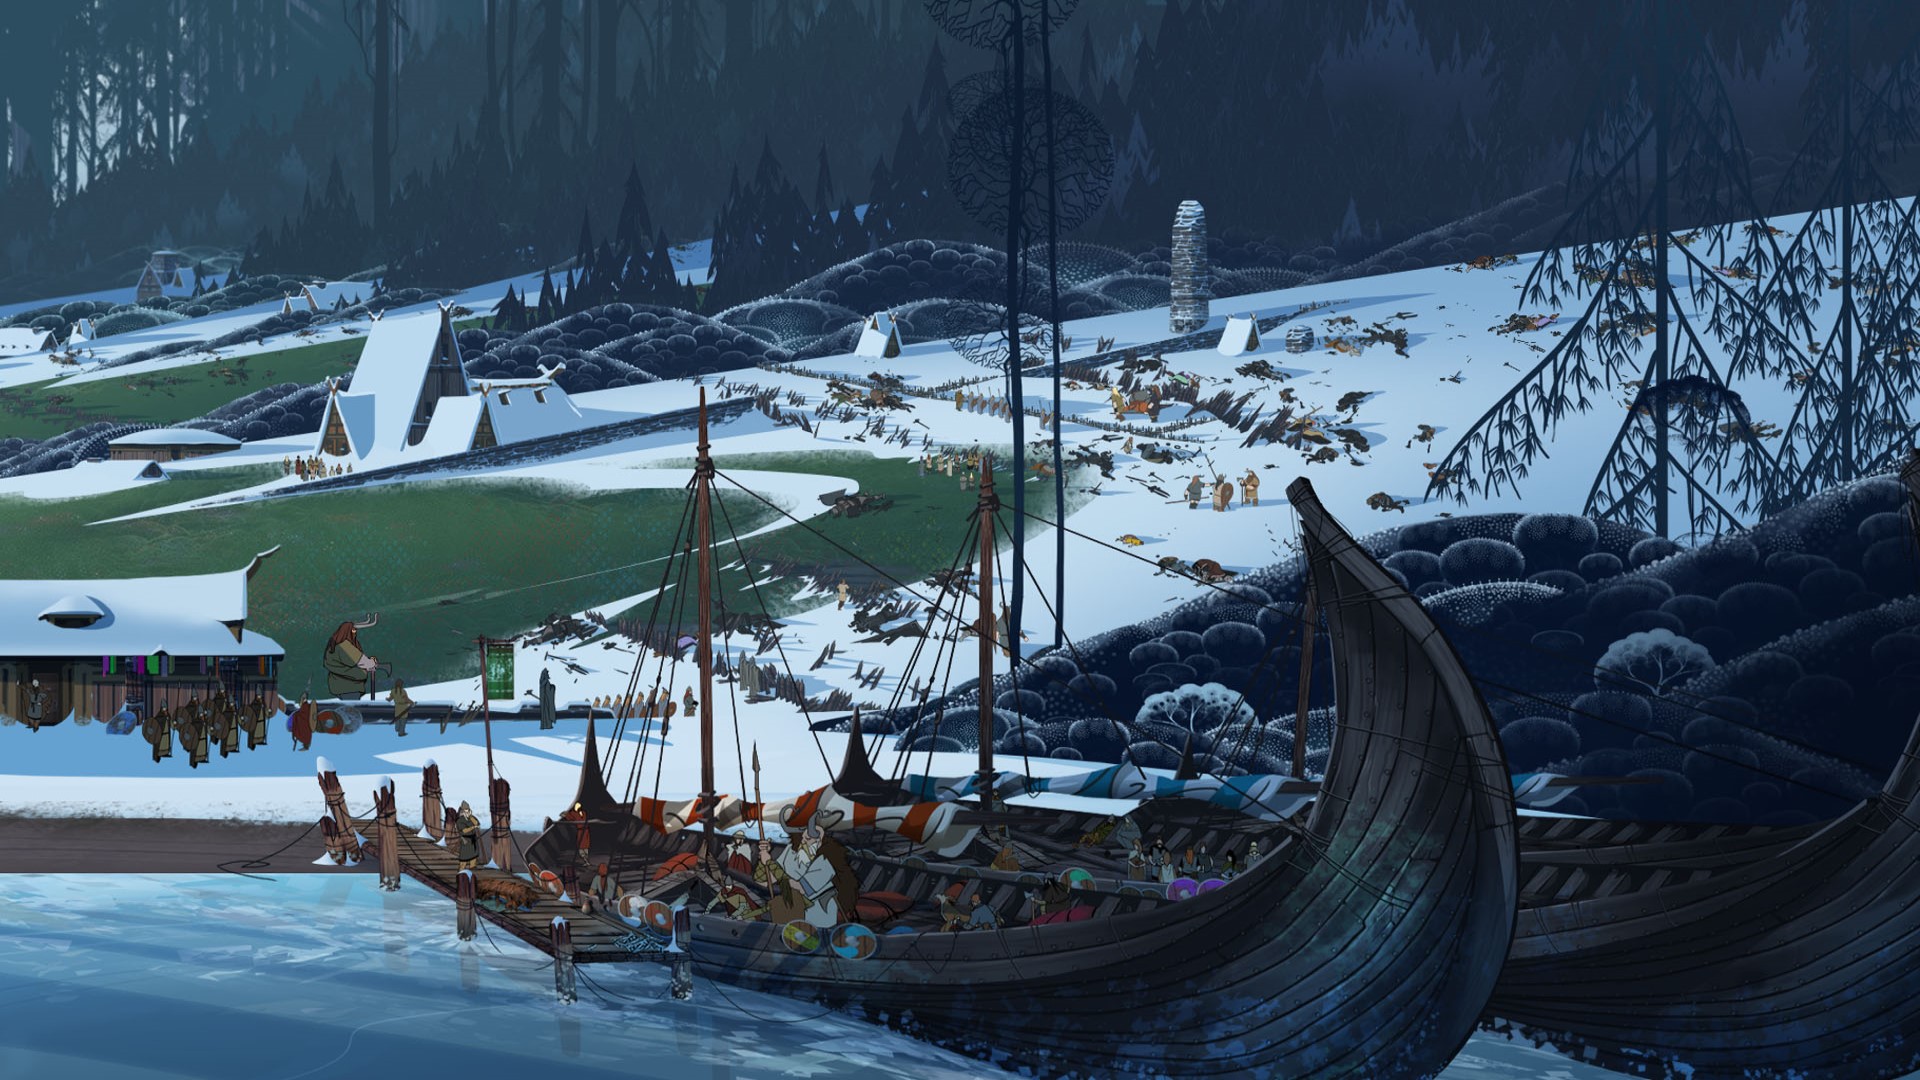 משחקי האסטרטגיה הניידים הטובים ביותר: סאגת הבאנר. תמונה מציגה ספינת ויקינג ליד שטח אדמה מושלג